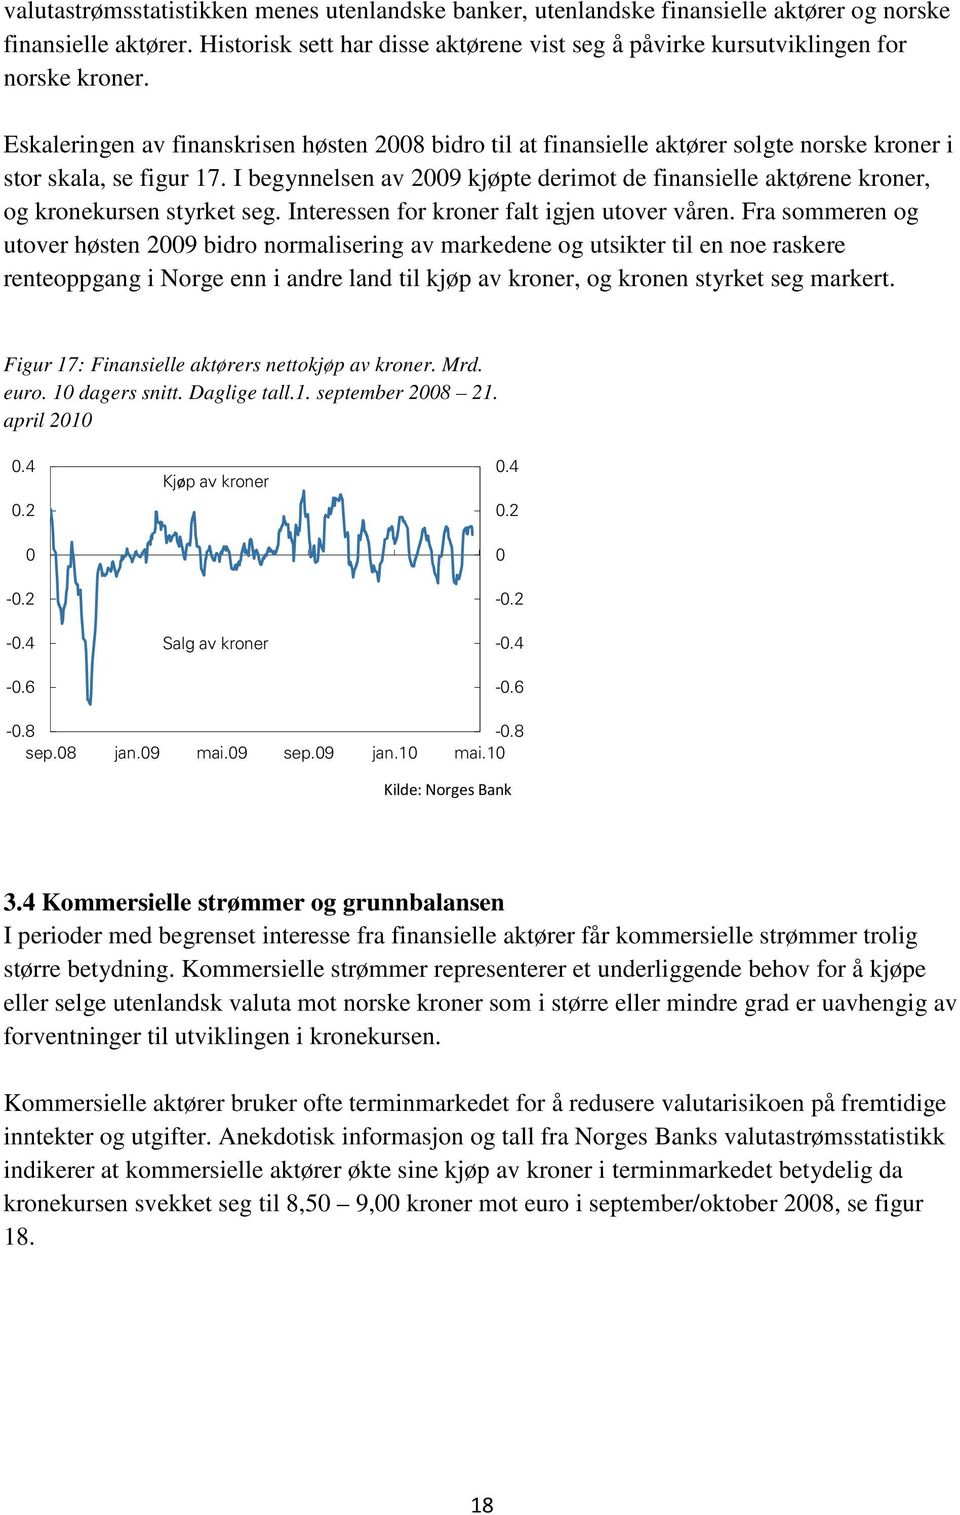 Eskaleringen av finanskrisen høsten 28 bidro til at finansielle aktører solgte norske kroner i stor skala, se figur 17.